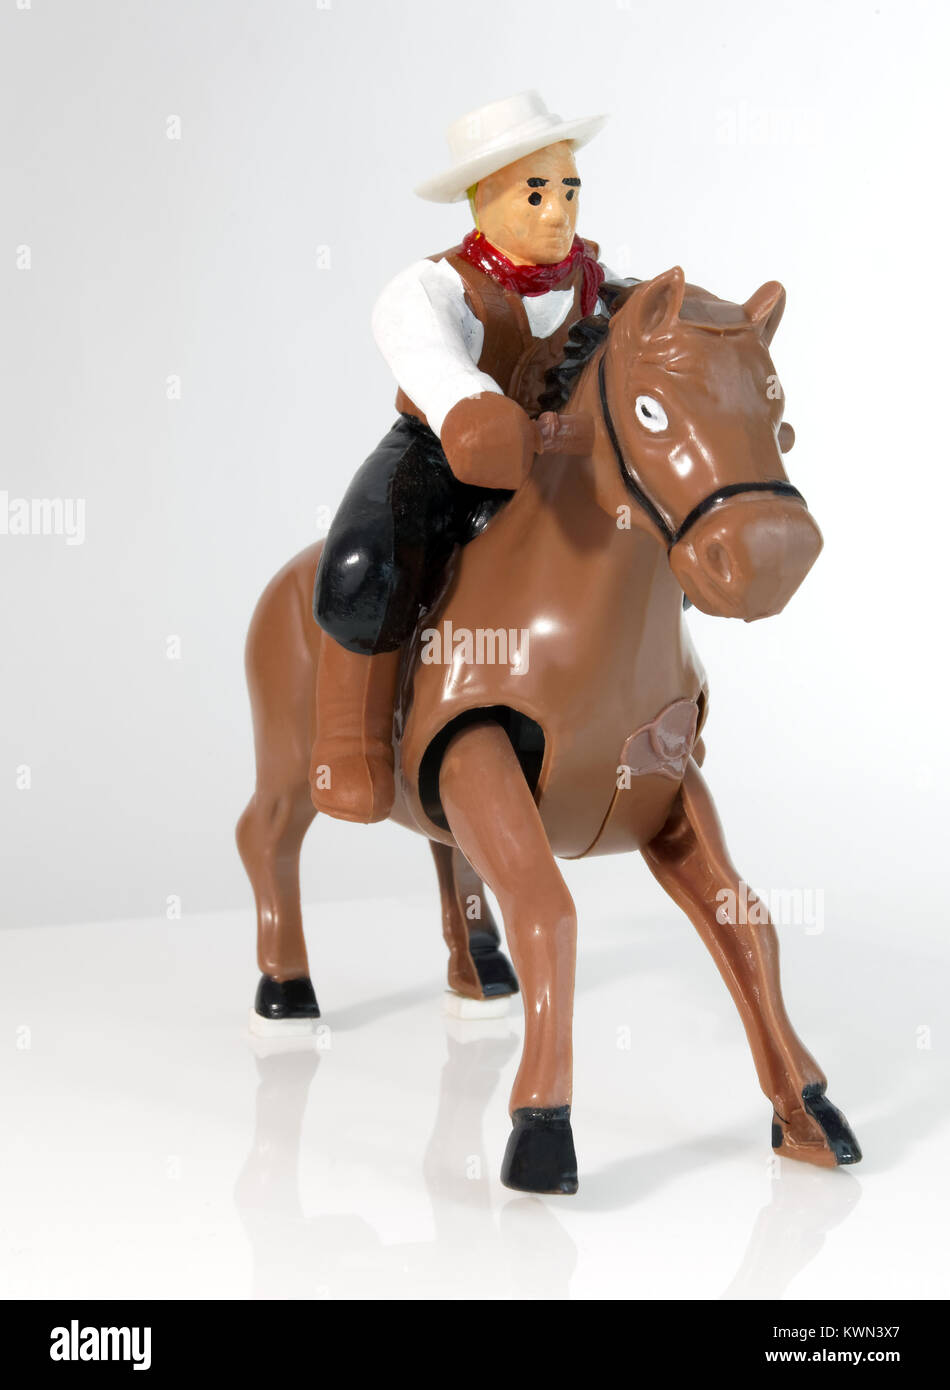 Cowboy sur cheval jouet d'enroulement. Banque D'Images